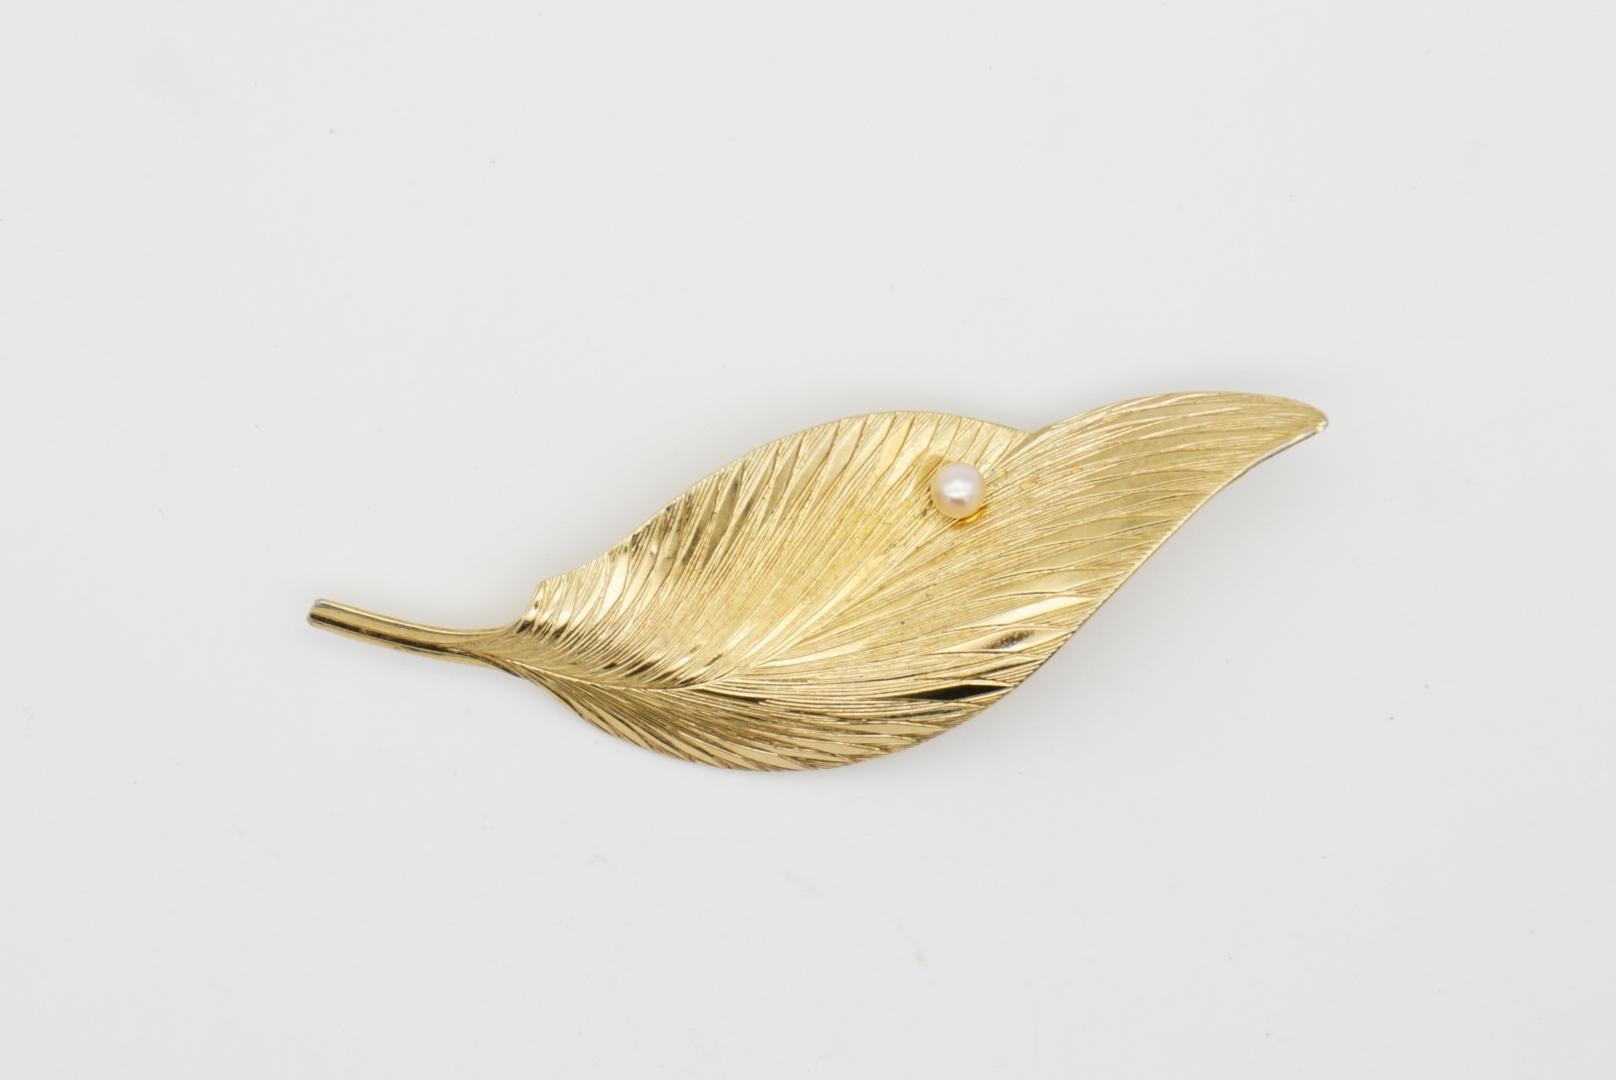 Christian Dior GROSSE 1964 Vintage Vivid Wavy Leaf Pearl Exquisite Gold Brooch For Sale 4